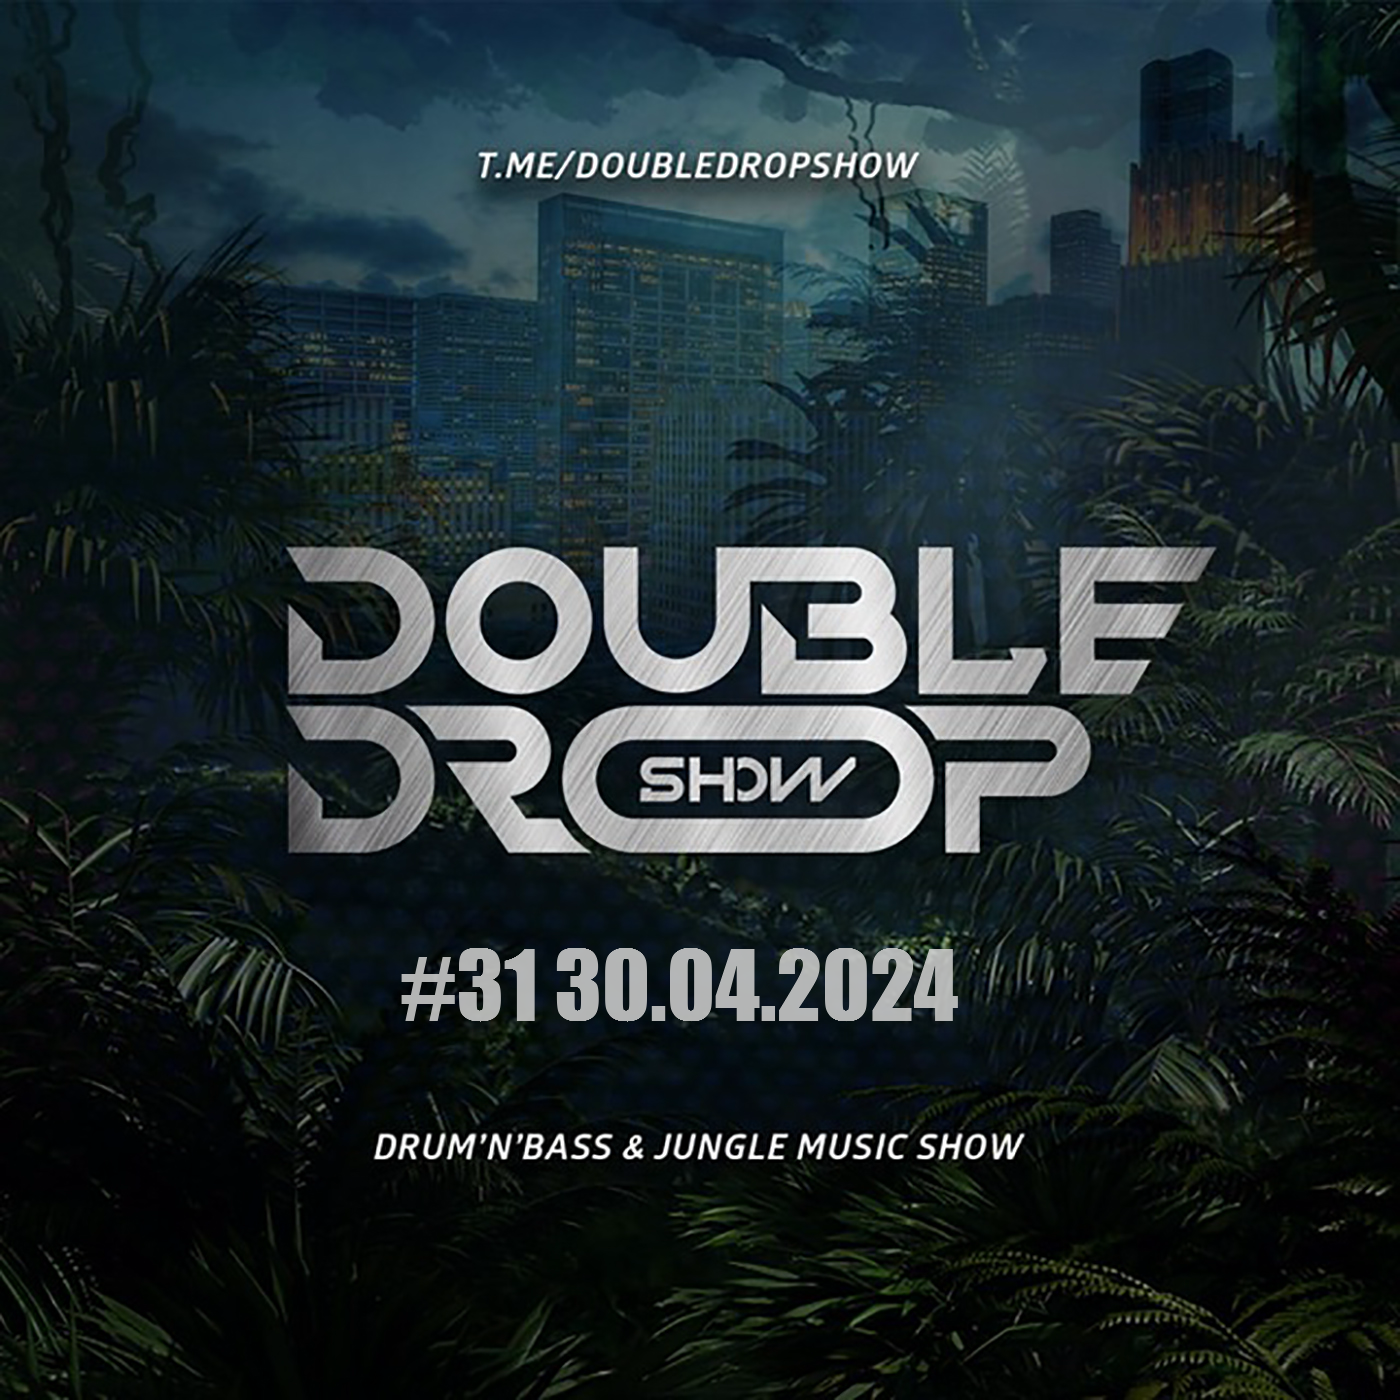 #31 DOUBLE DROP SHOW (30.04.2024)